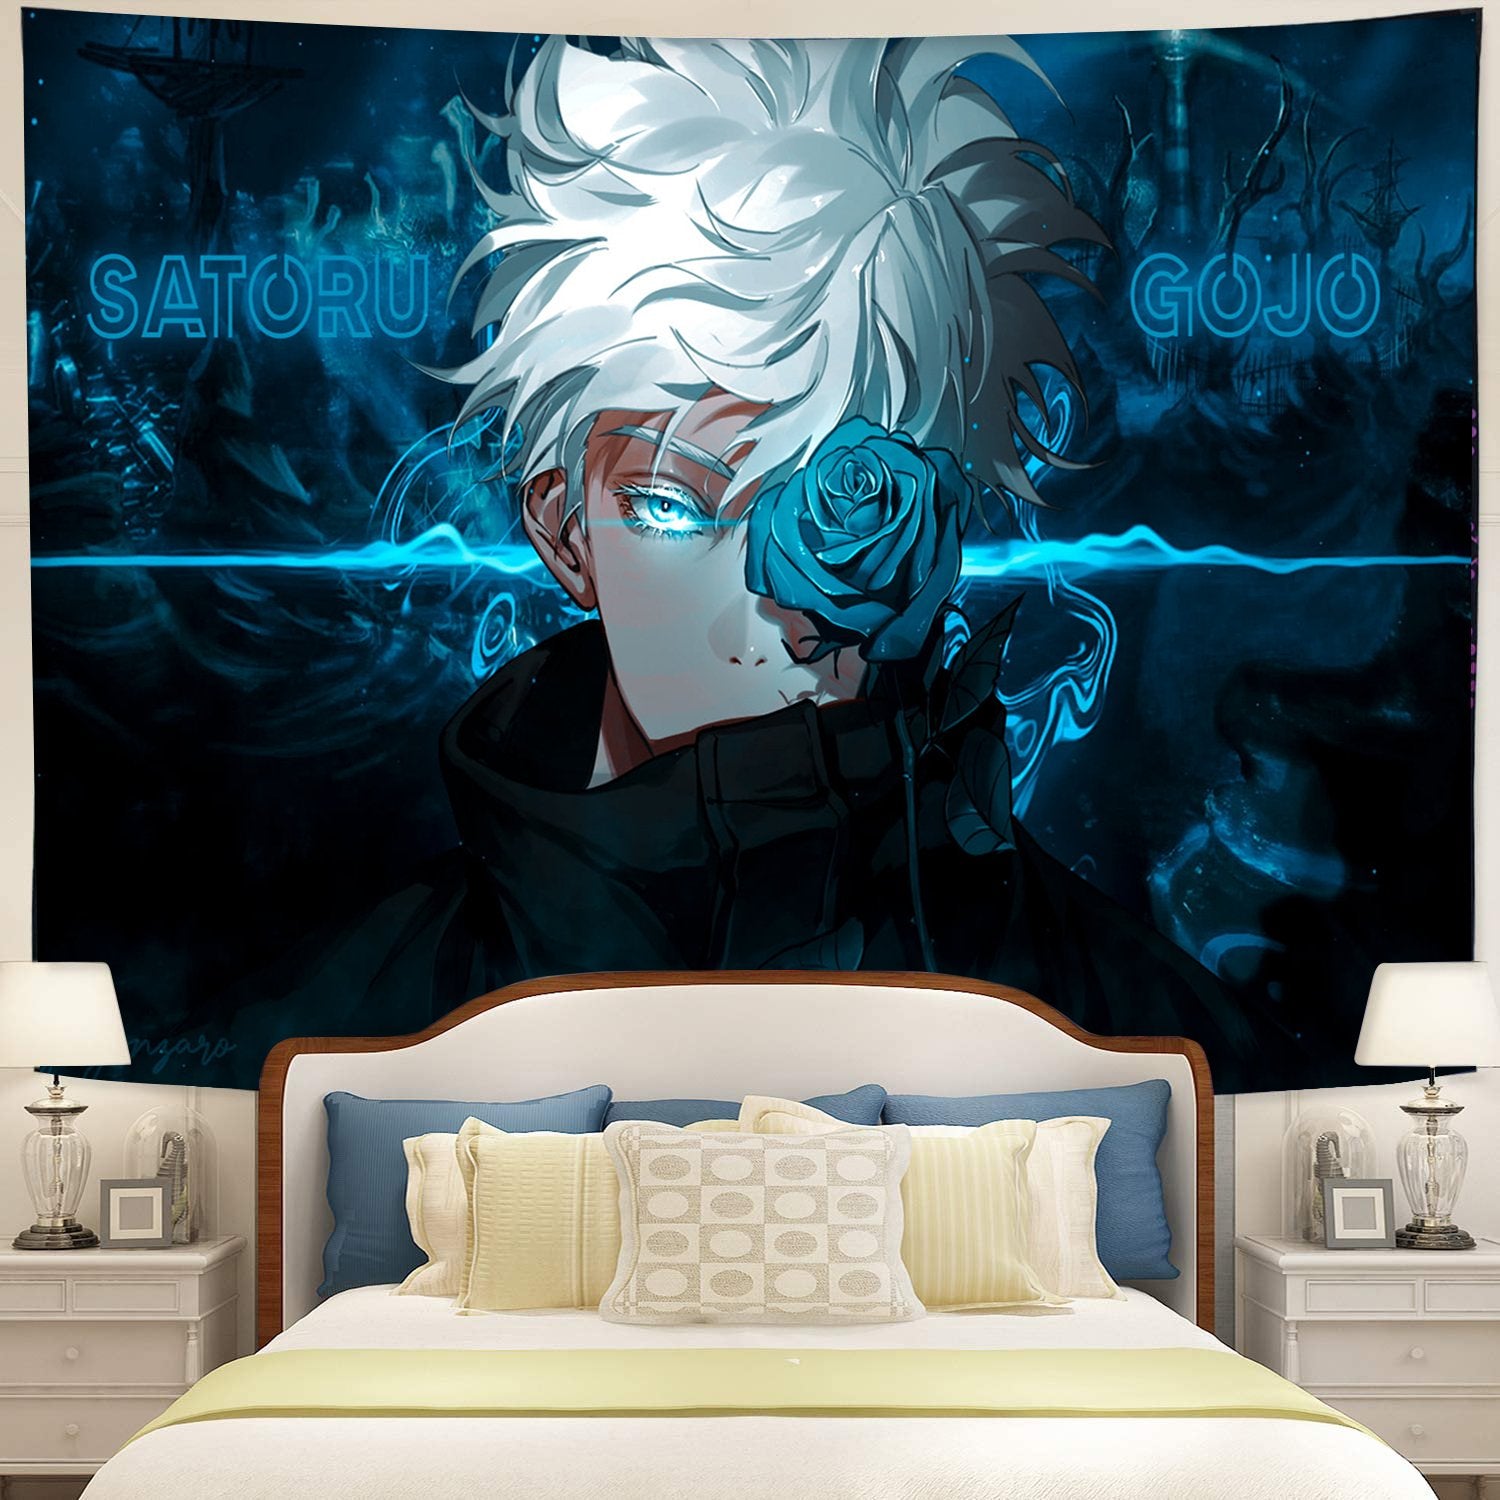 Satoru Gojo Jujutsu Kaisen Anime Tapestry Room Decor